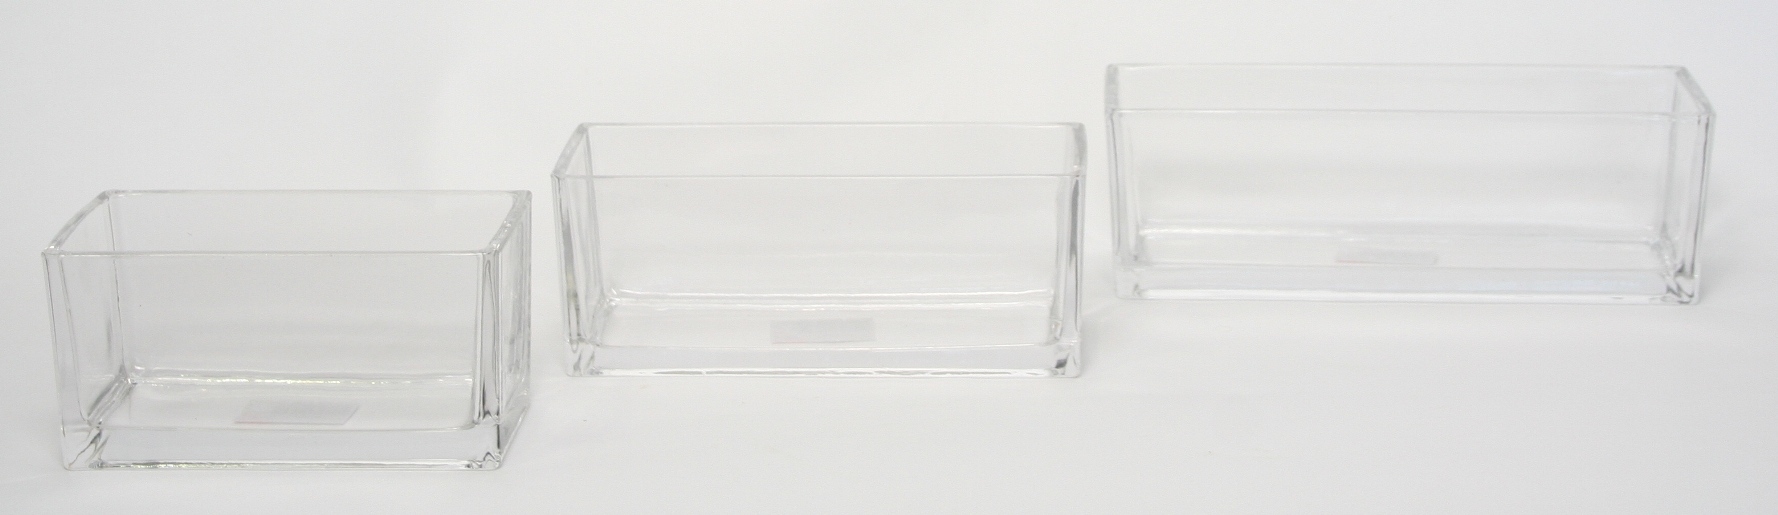 Accuschaal laag konisch langwerpig 20 cm heavy glas